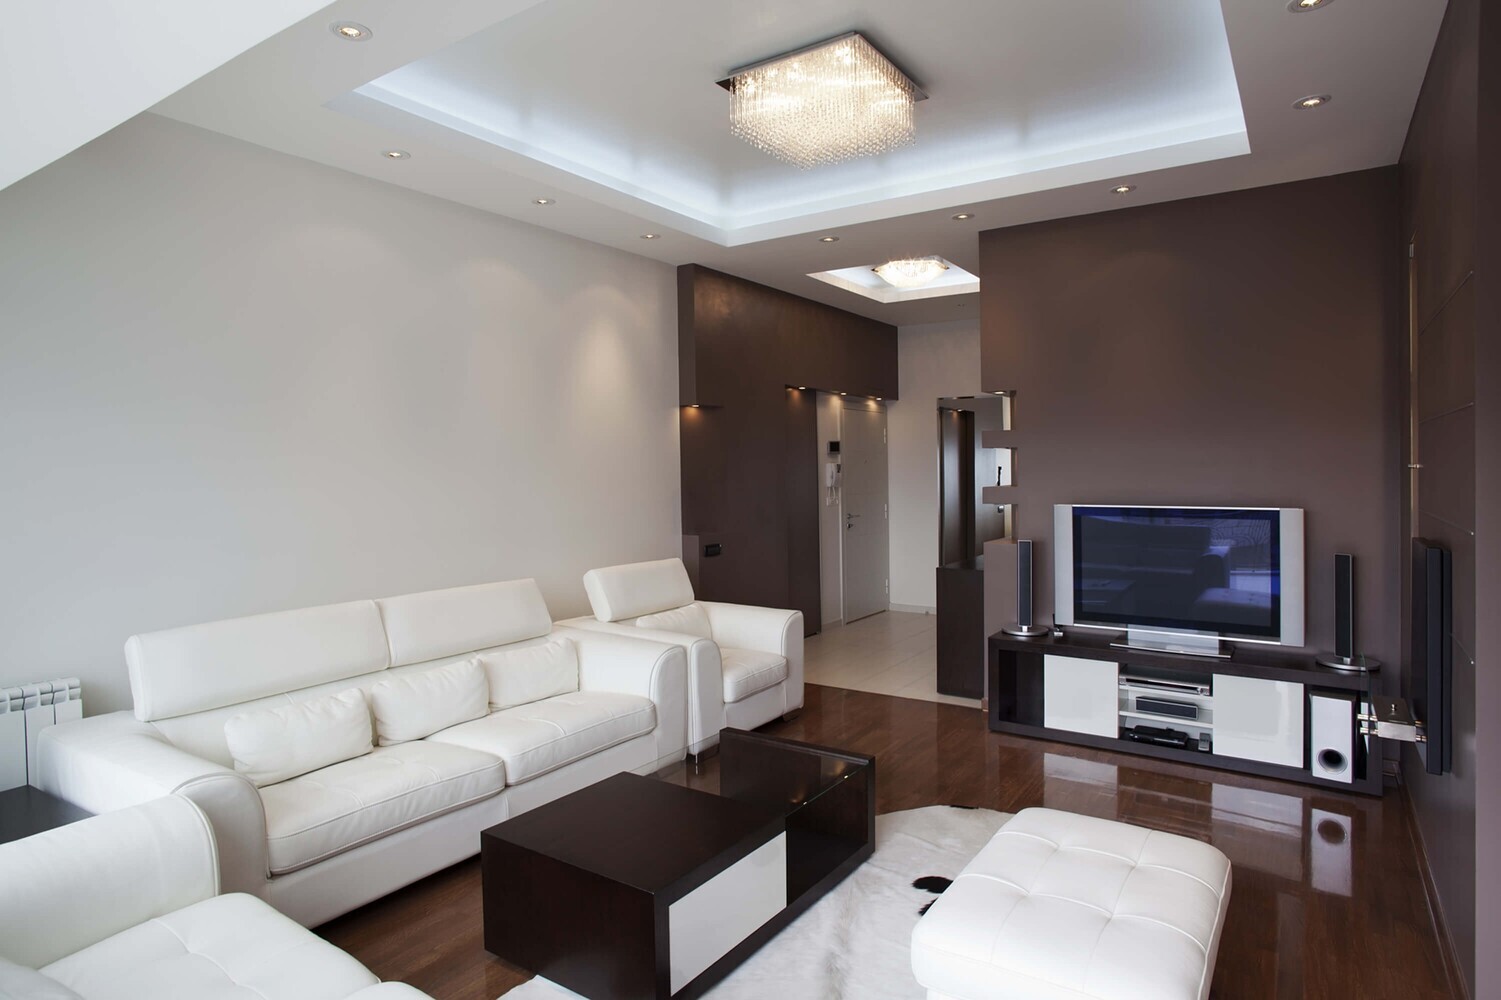 Qualitativ hochwertiger, kaltweißer LED Streifen von LED Universum für Smart Home Systeme